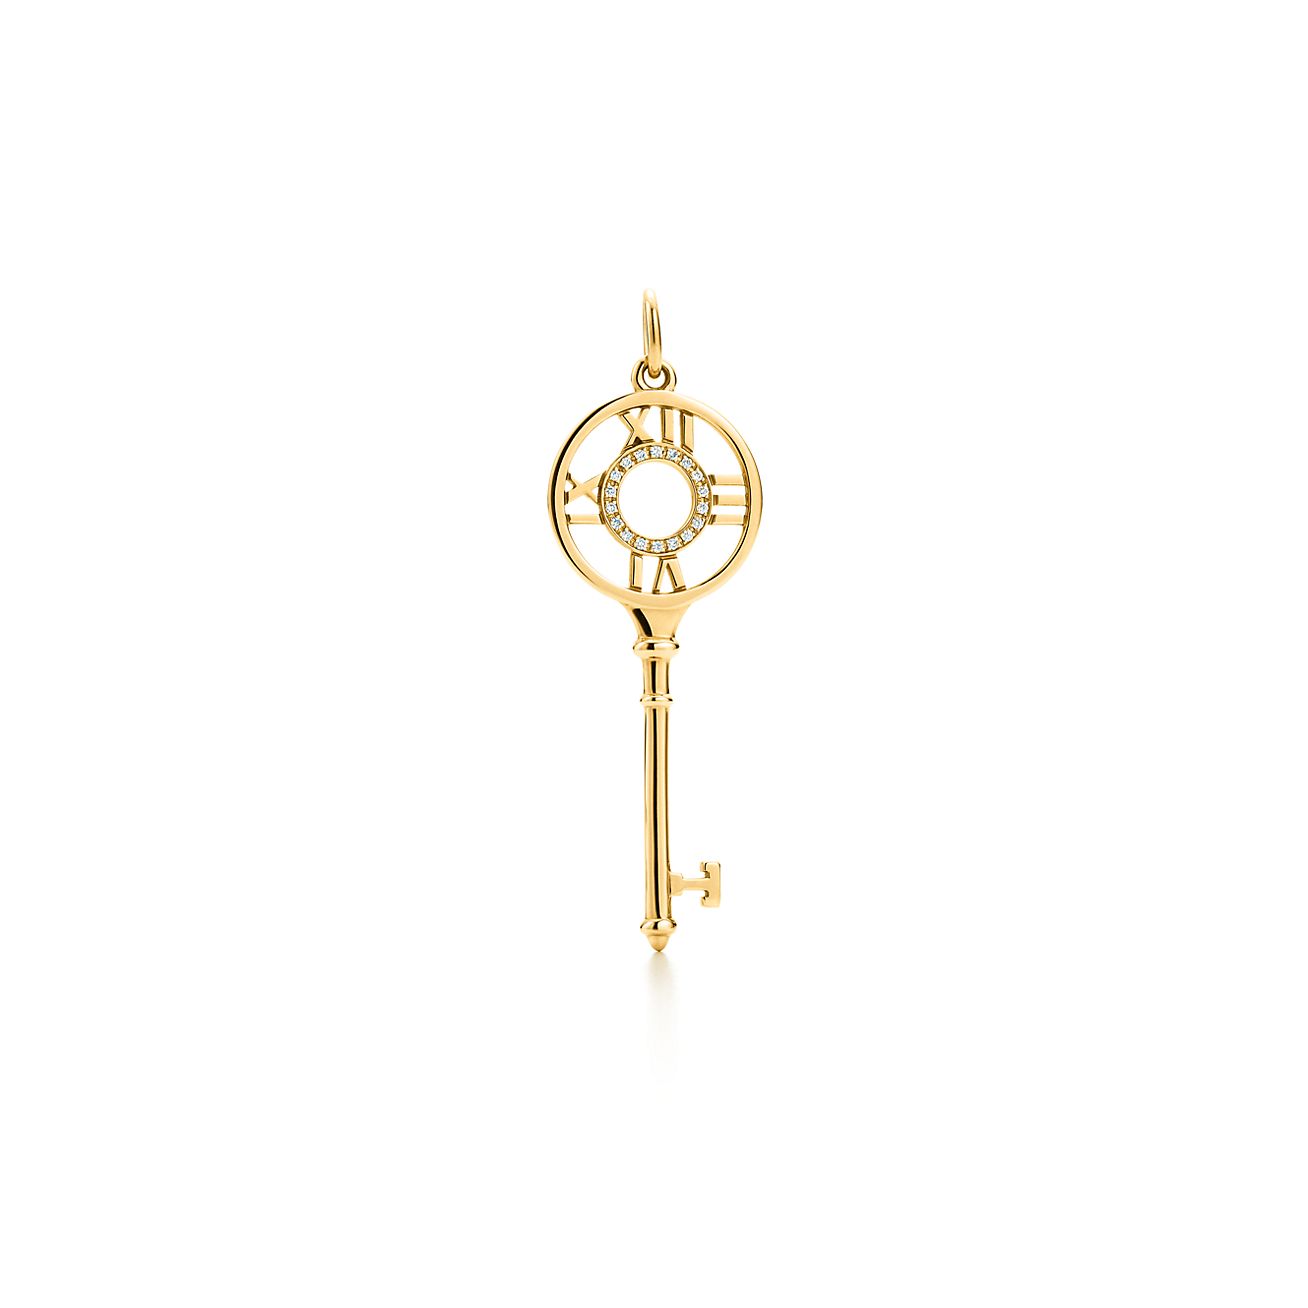 Tiffany Keys Atlas® key pendant in 18k 